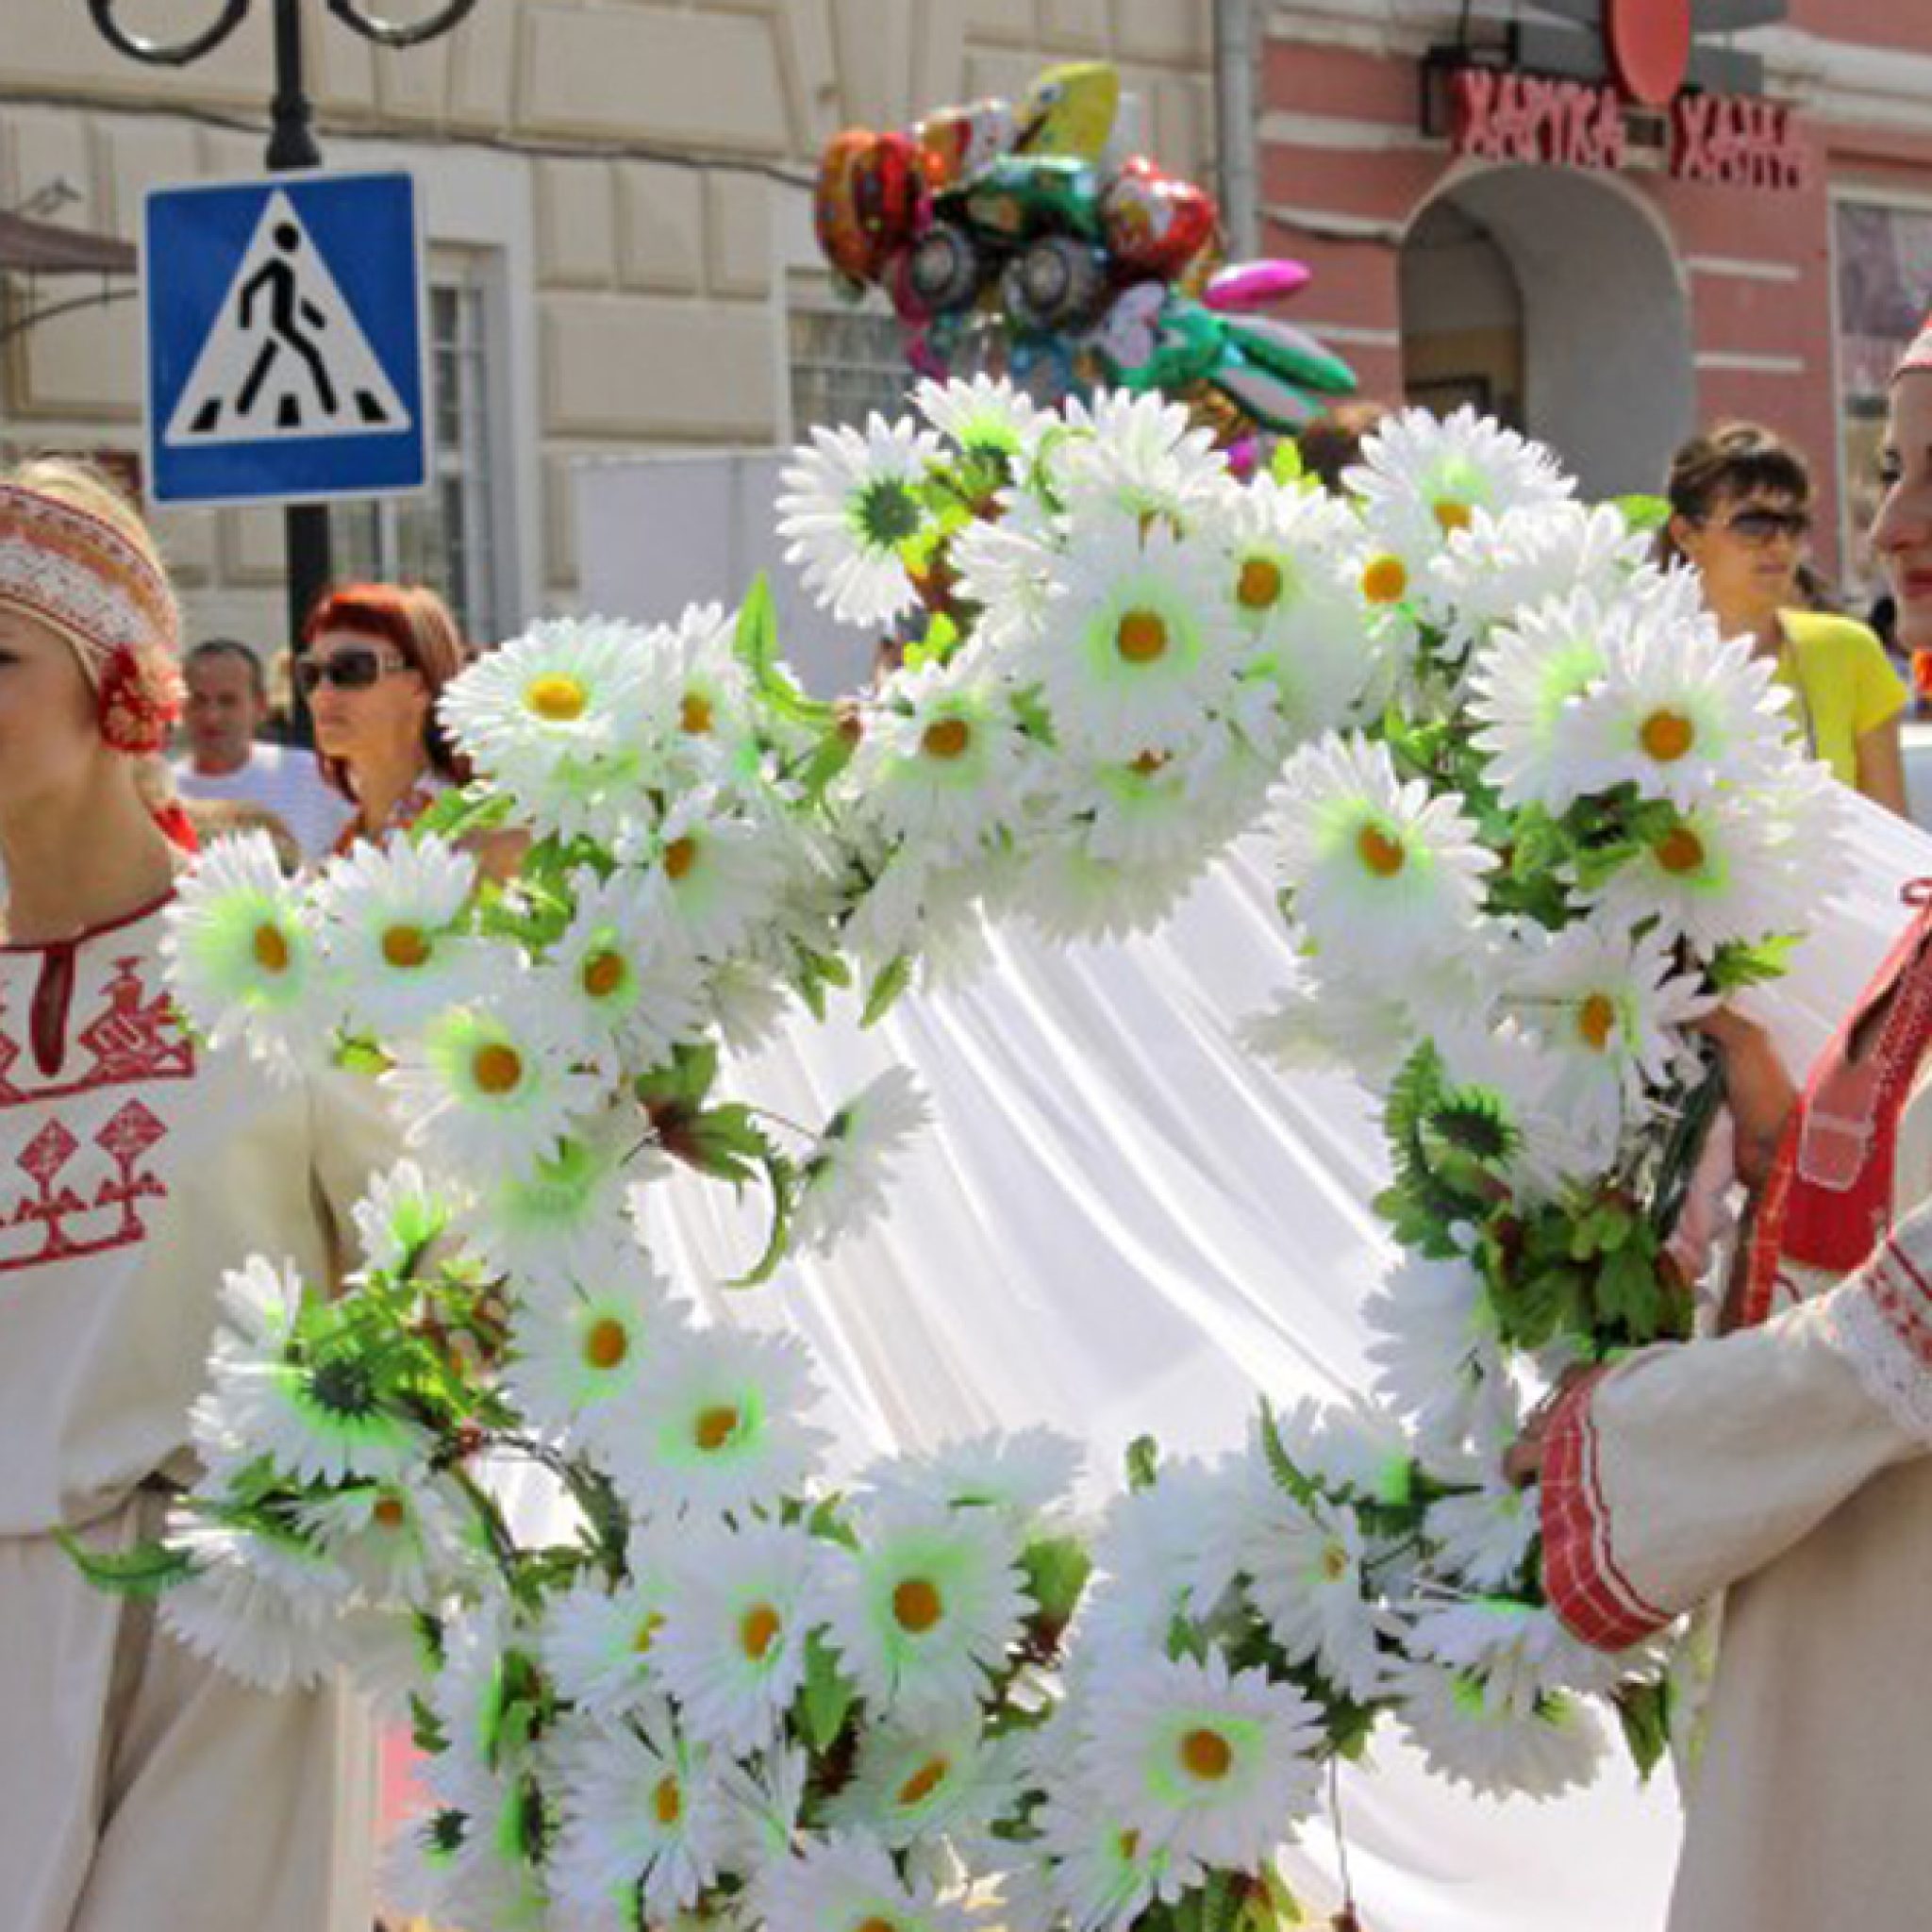 День любви в россии 8 июля